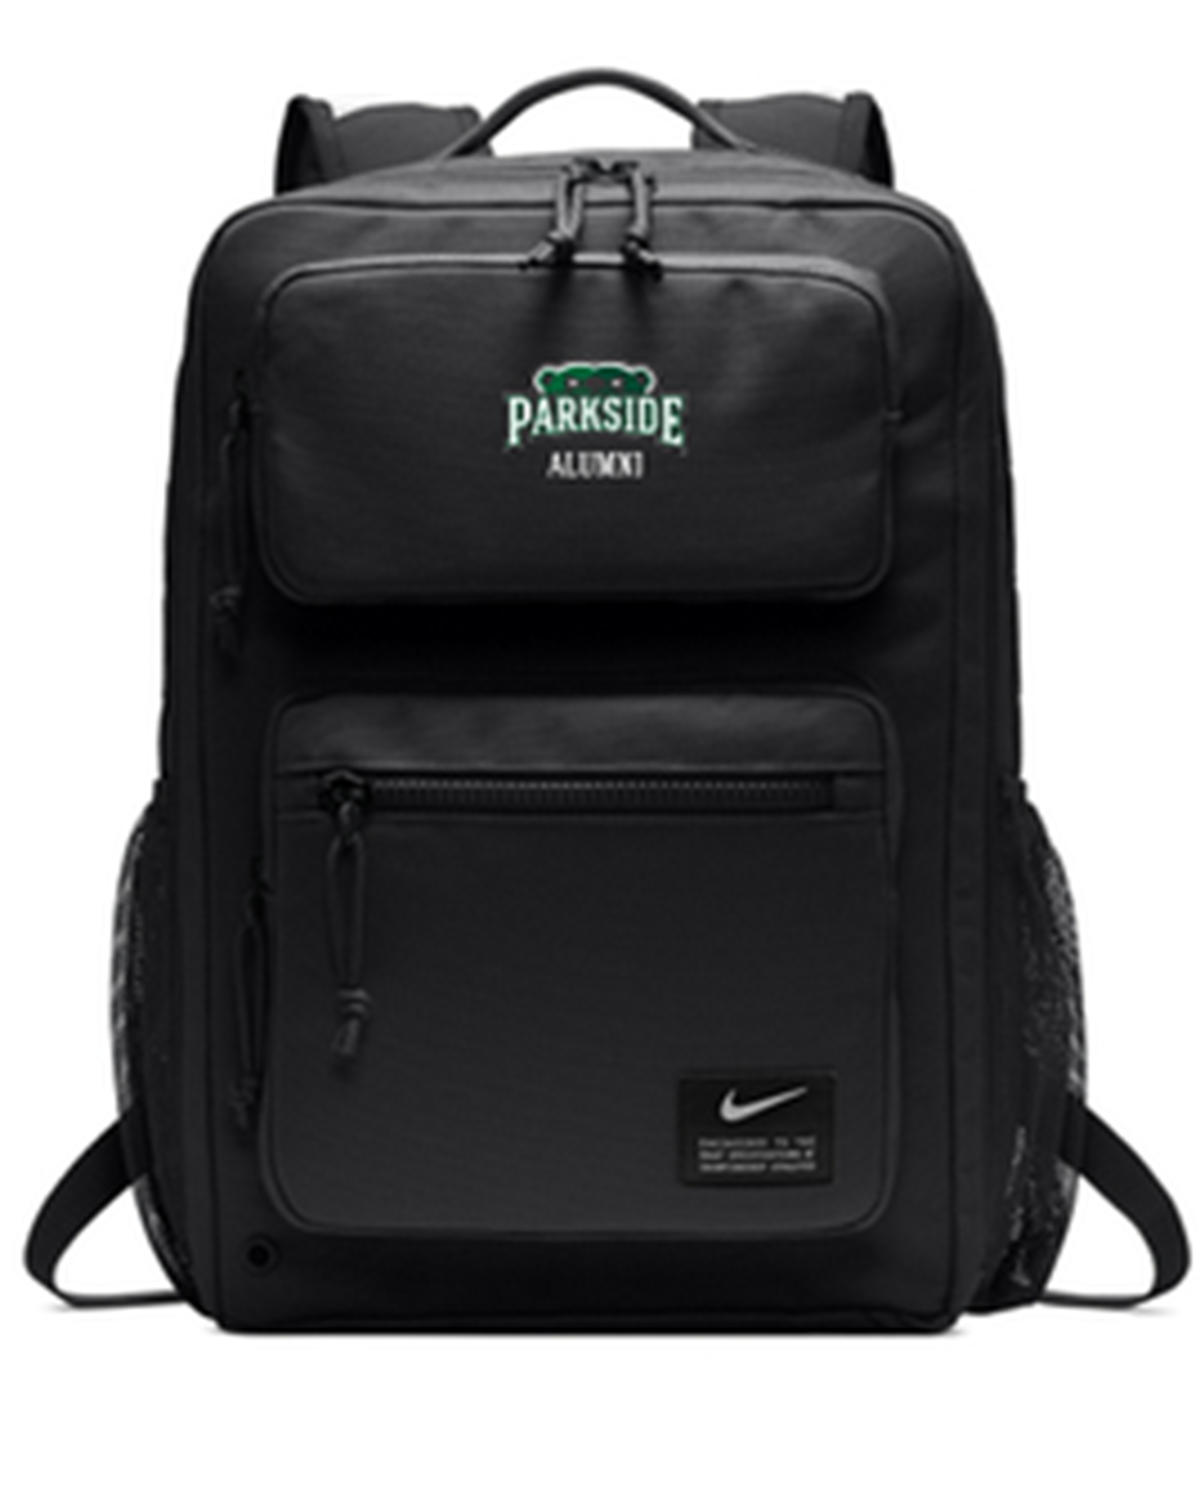 black Nike backpack with the alumni logo